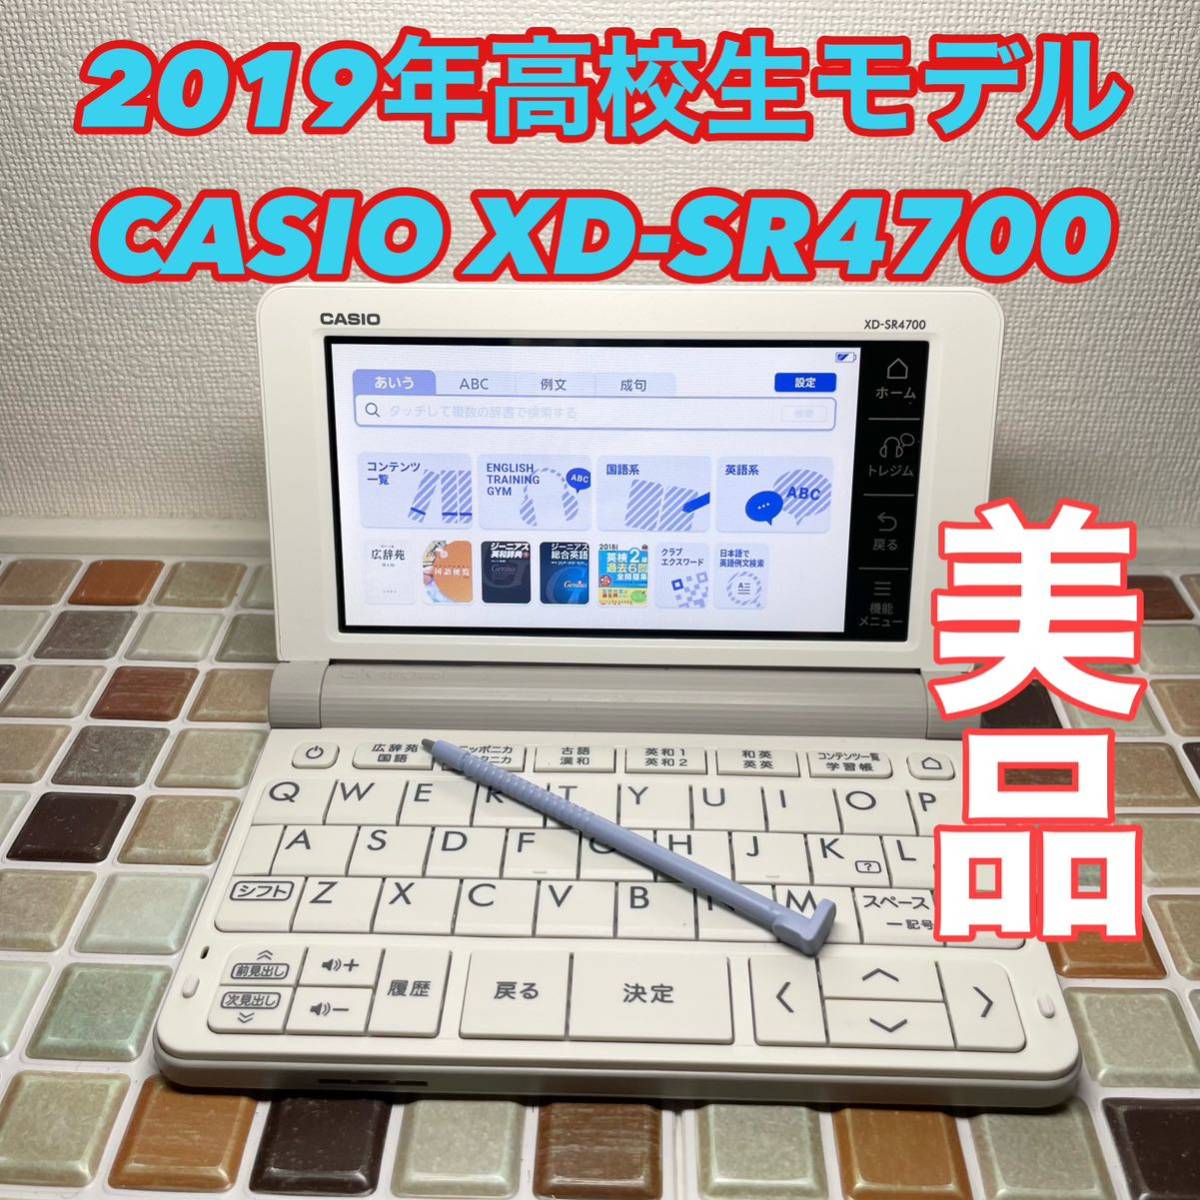 送料無料☆高校生モデル XD-SR4700 カシオ CASIO 電子辞書 EX-word